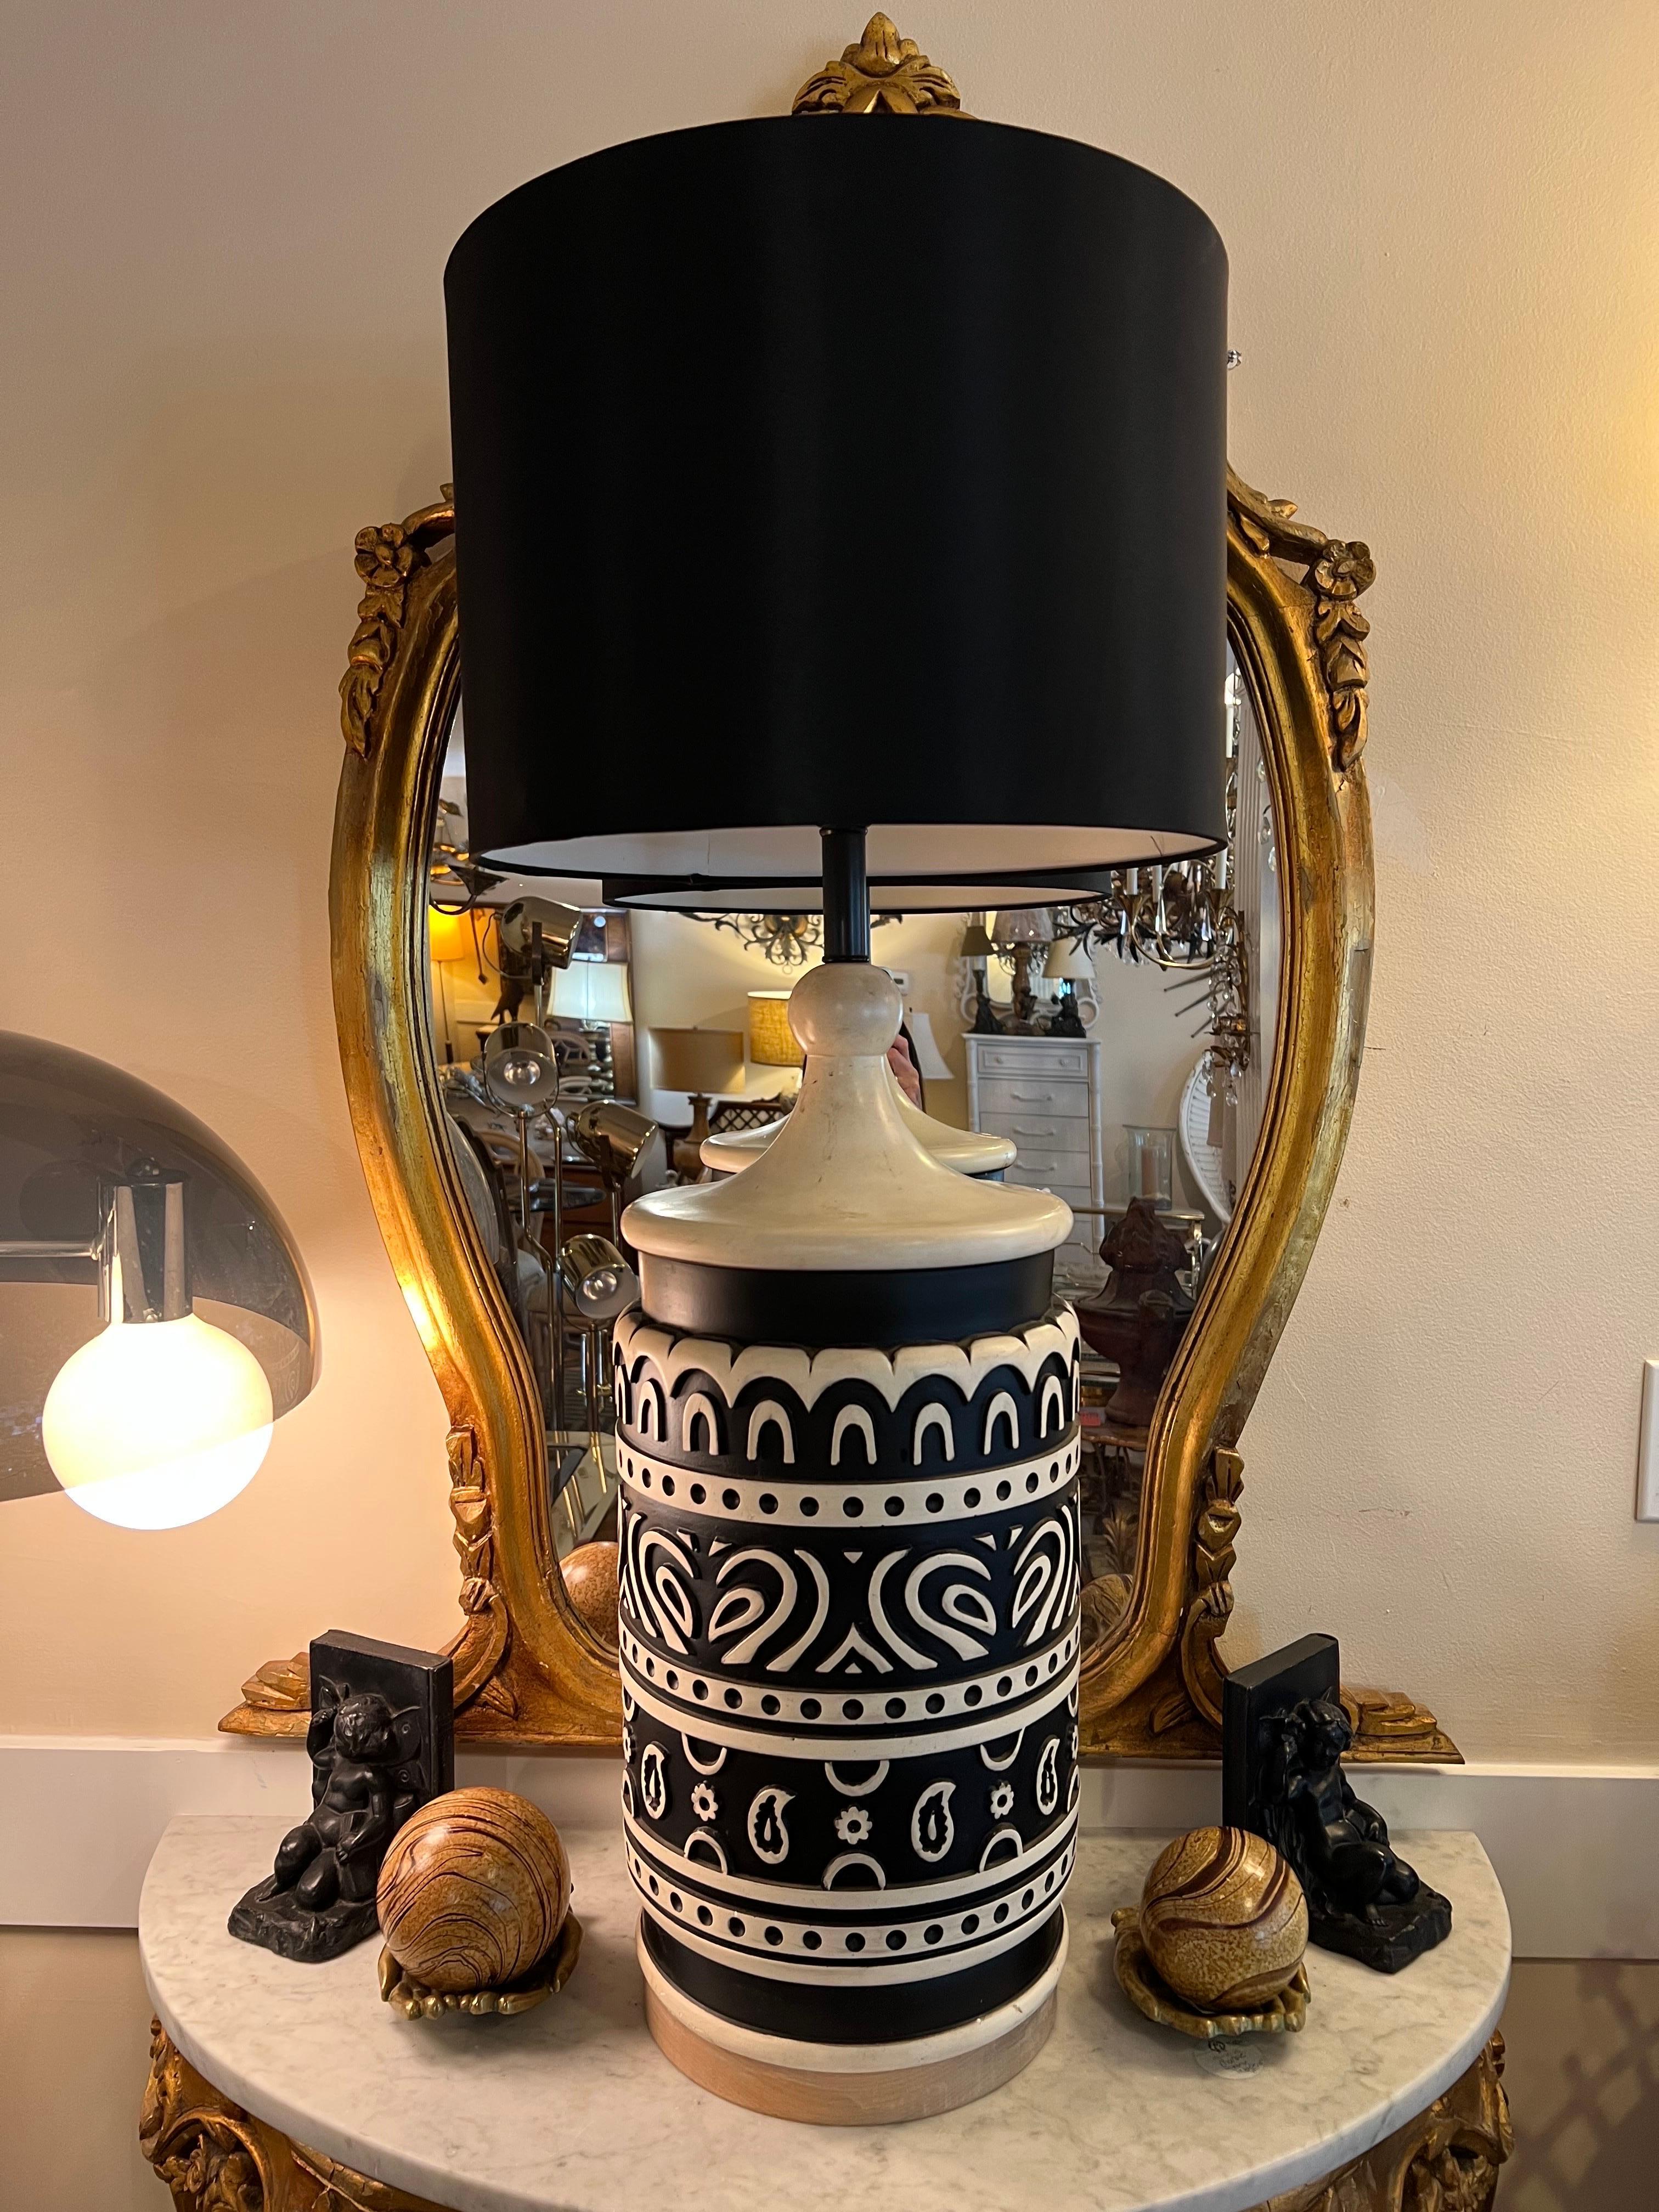 Lampe tiki en céramique du milieu du siècle. Lampe étonnante et unique en son genre avec des motifs géométriques et paisley détaillés en noir et crème. Elle possède une base en bois naturel en rond avec un abat-jour tambour en soie noire. La partie